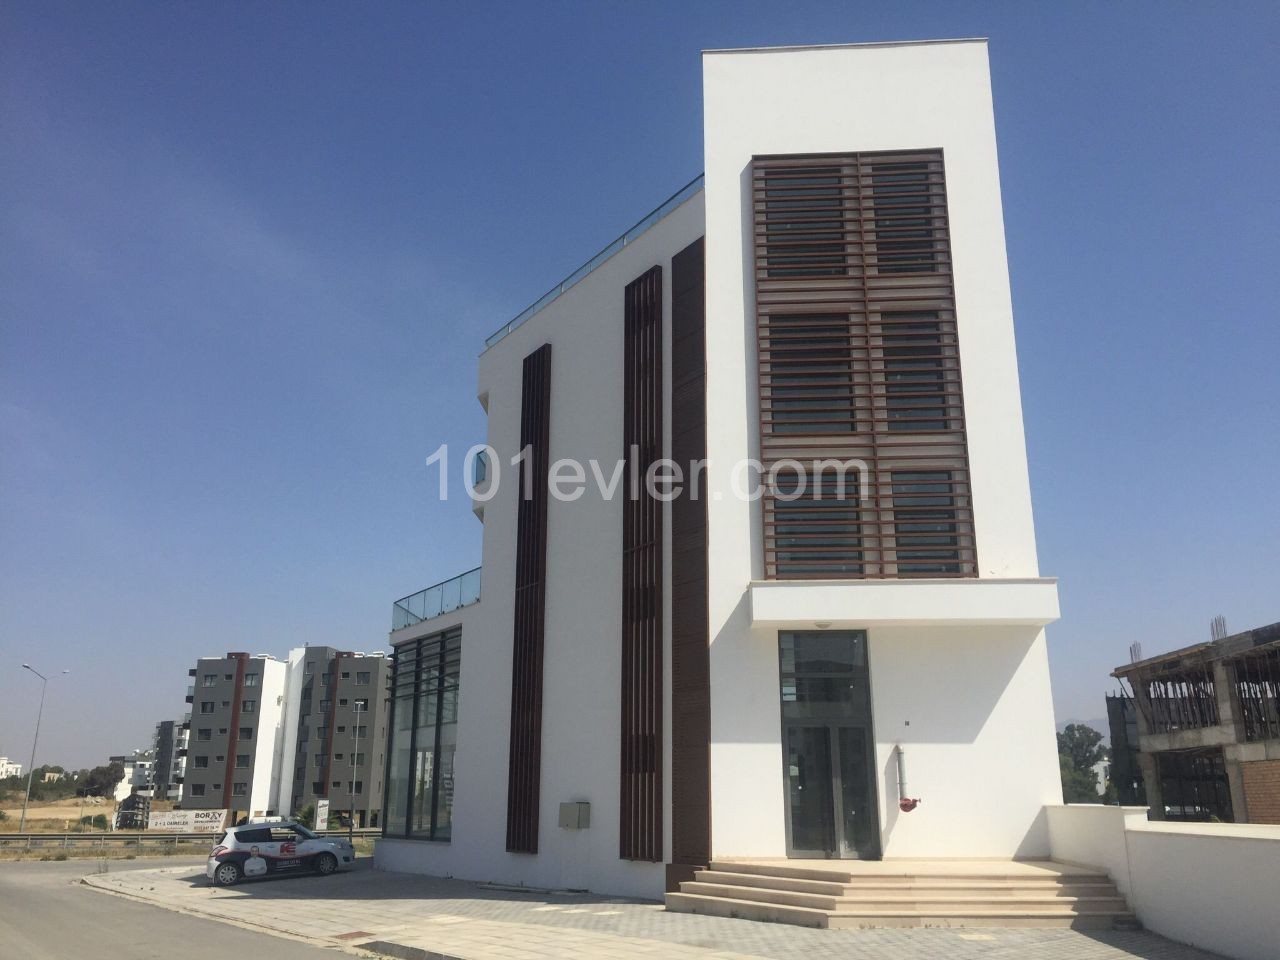 Lefkoşa Dereboyu Cadde Üzerinde Kiralık Komple Bina (Plaza) Aylık ödemeli 7,500 STG 1200 m2